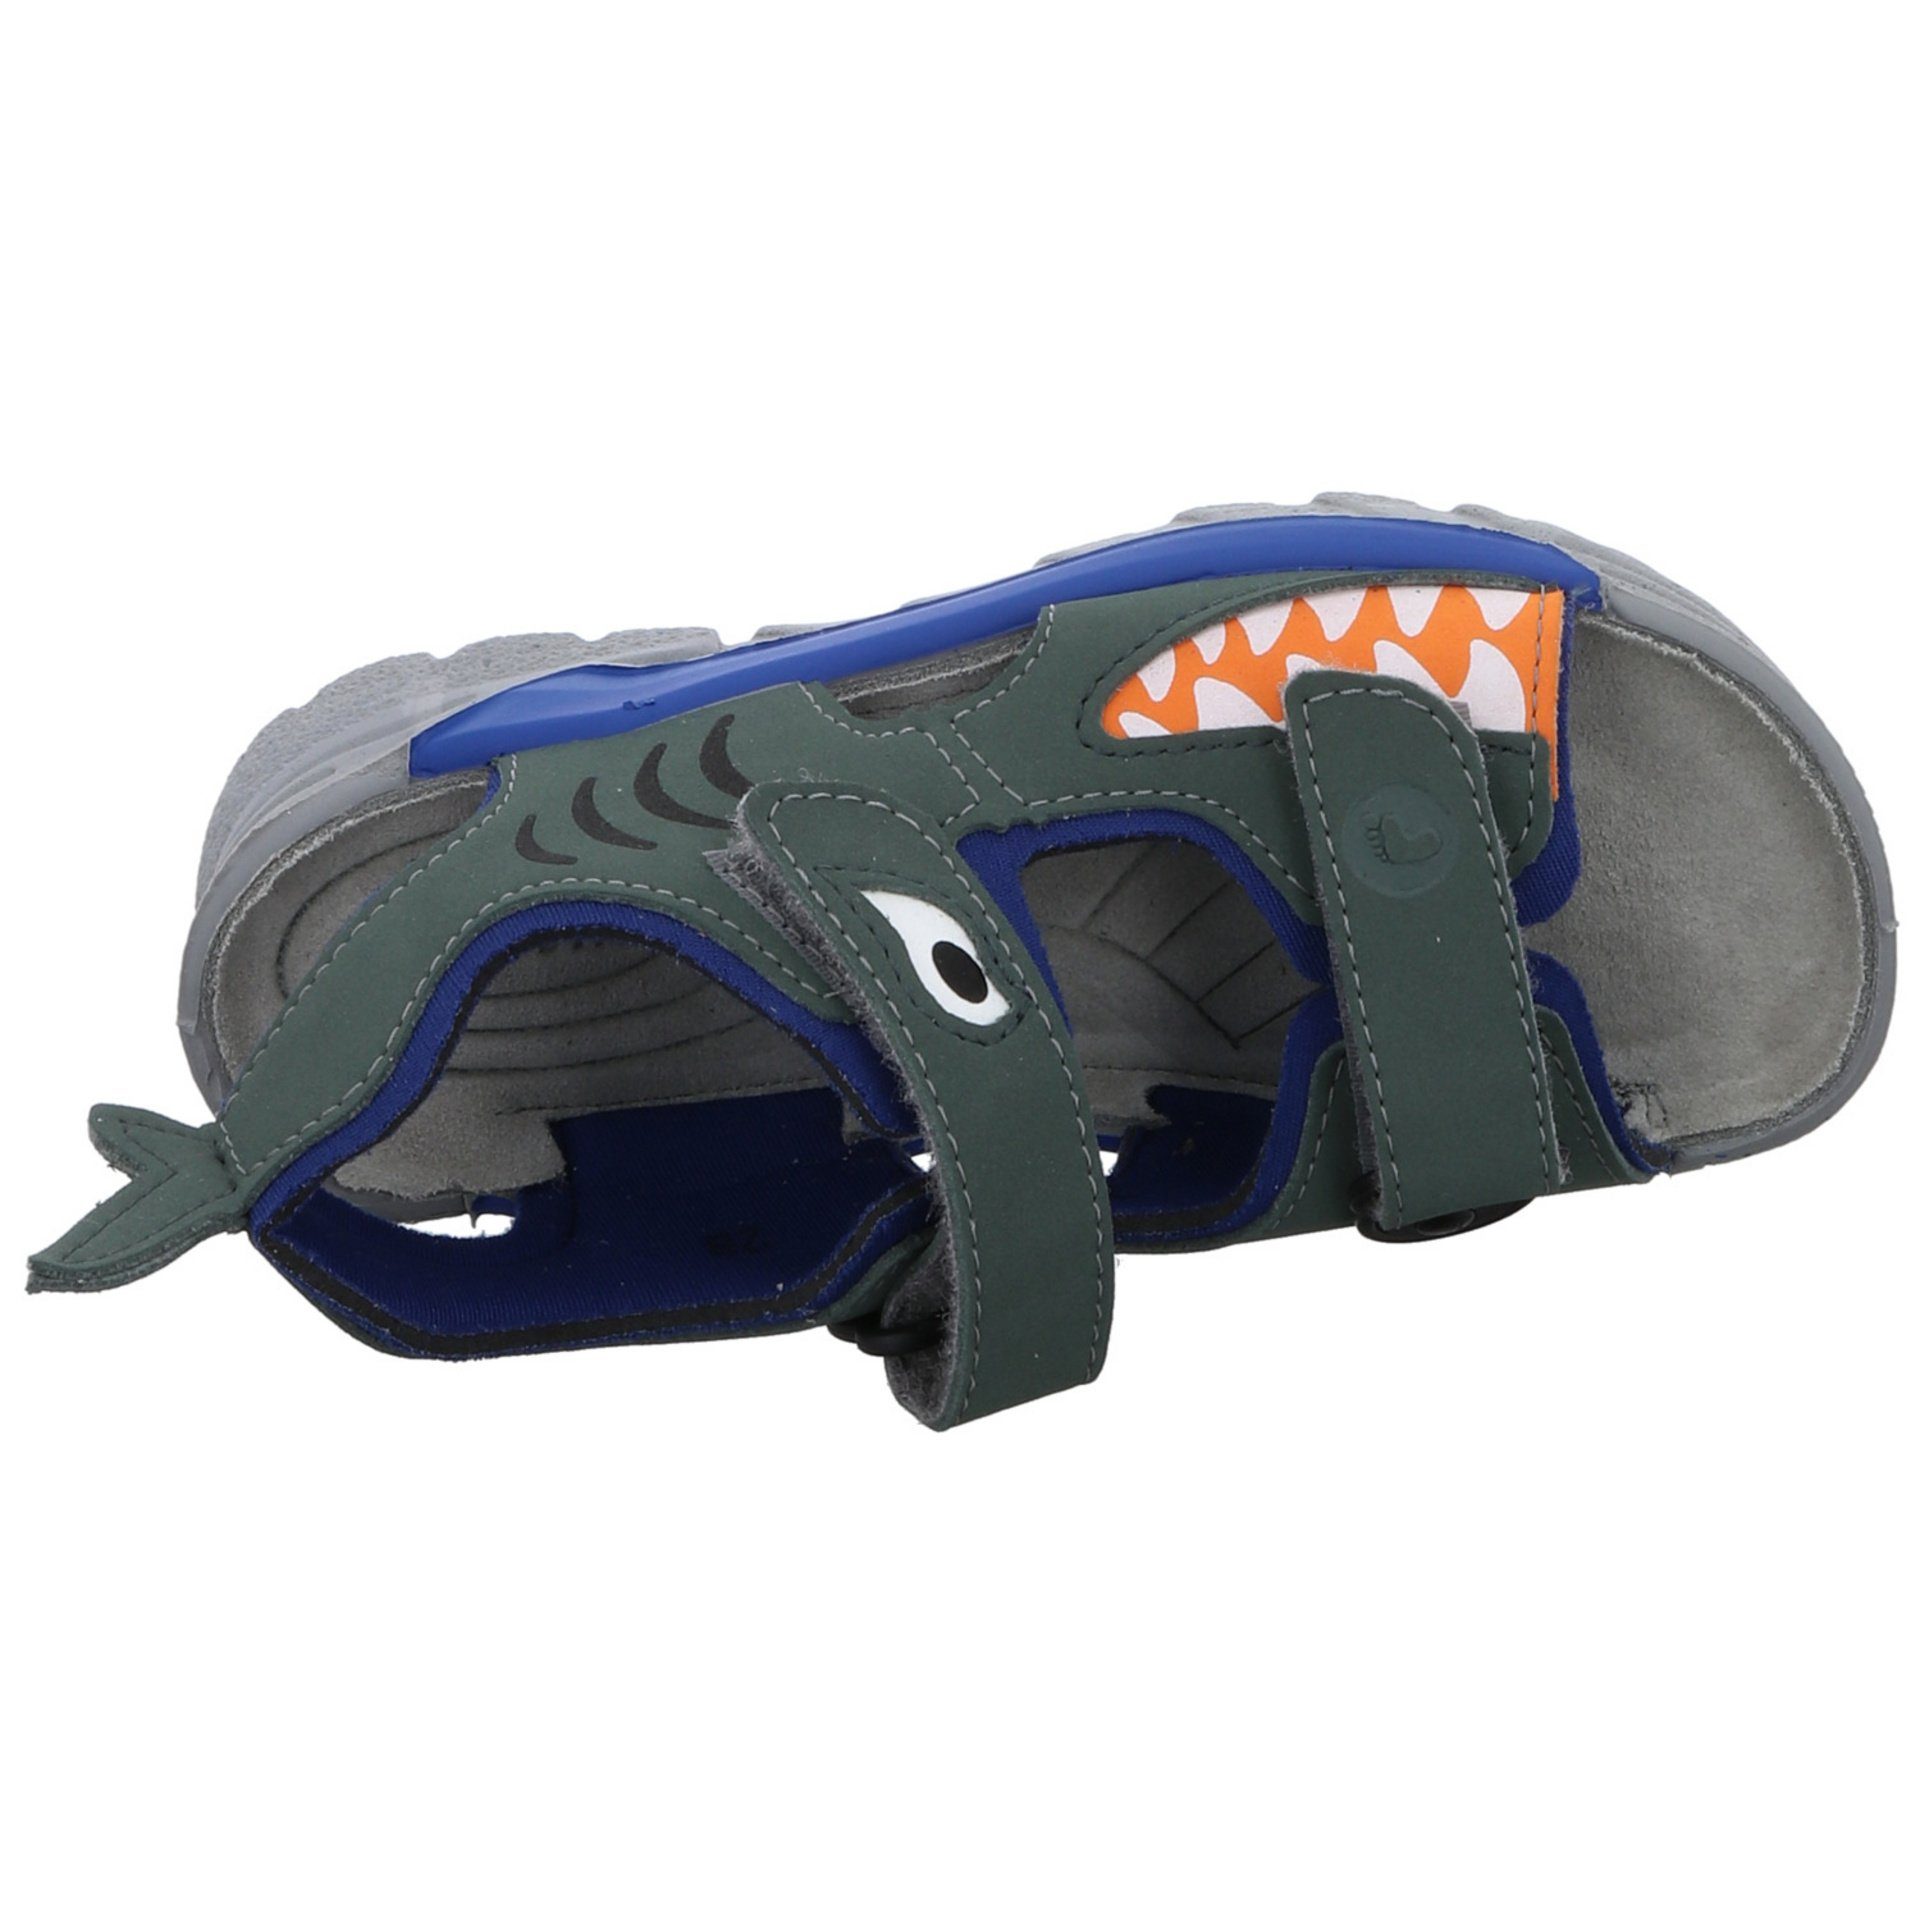 Kinderschuhe grün Sandale Ricosta Sandale Jungen Textil Sandalen Shark Schuhe